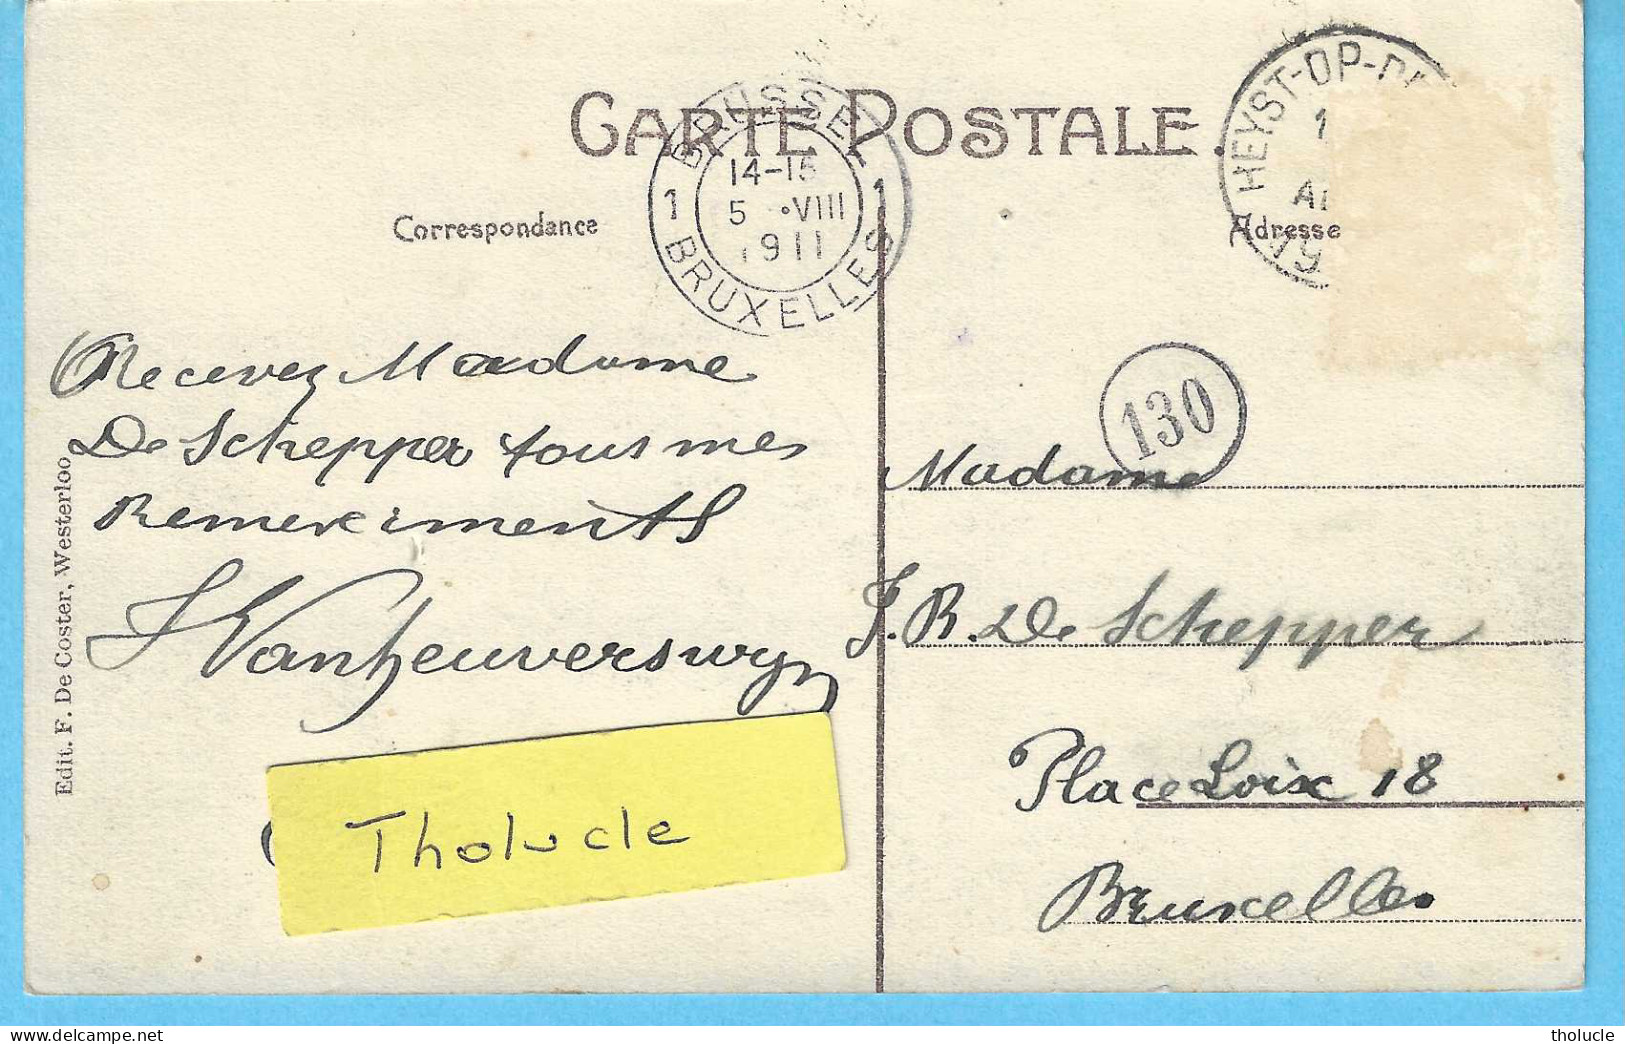 Westerloo-Westerlo-1911-Kasteel Jonkvrouw Gravin De Merode-Château  Mlle Comtesse De Merode-Uitg.F.De Coster, Westerloo - Westerlo